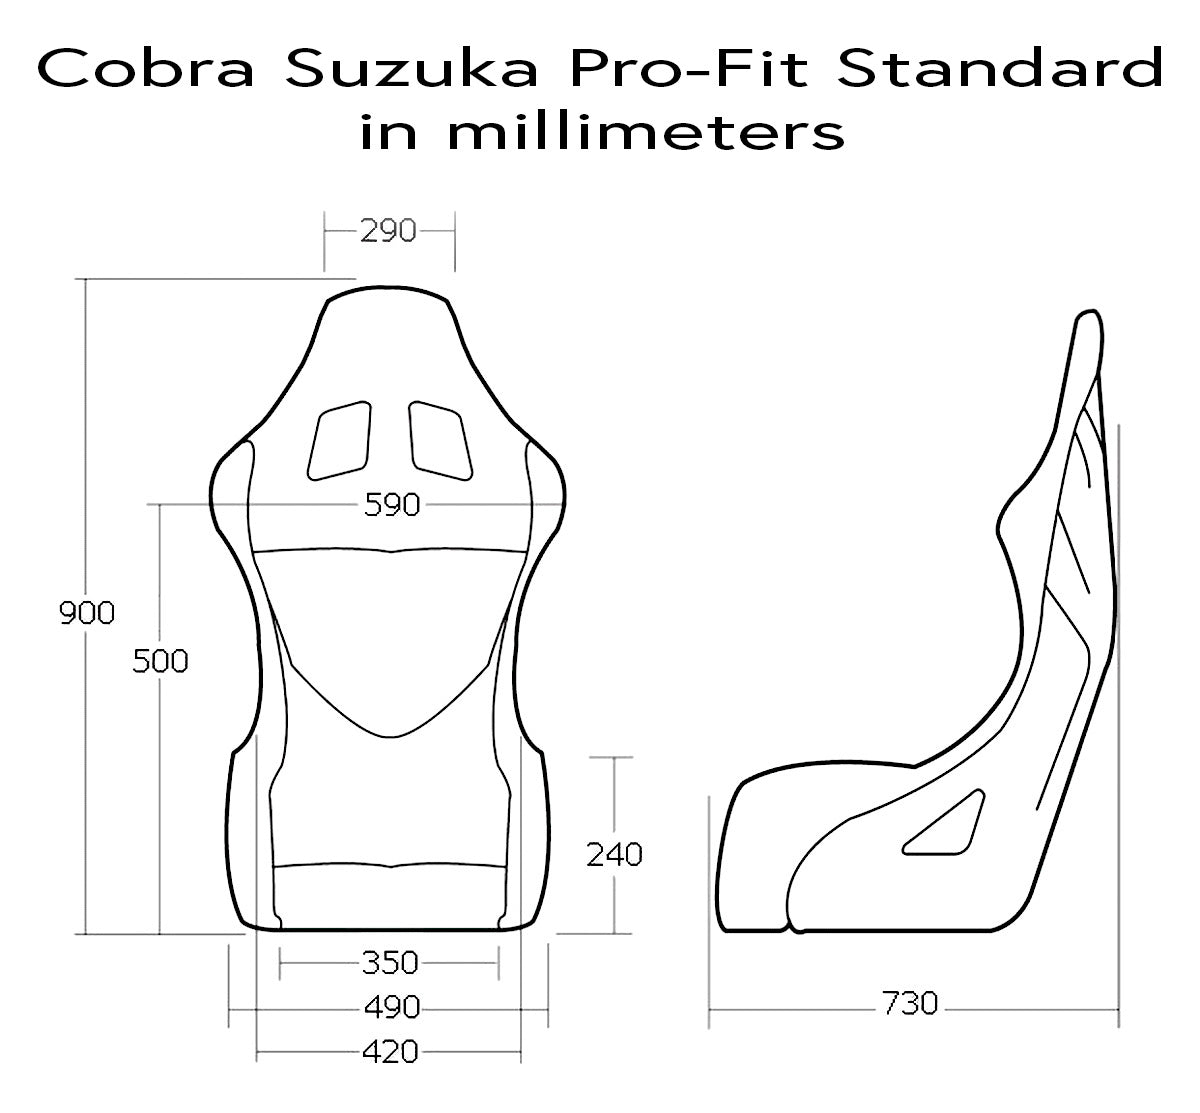 Cobra Suzuka Pro-Fit Racing Seat Dimensions